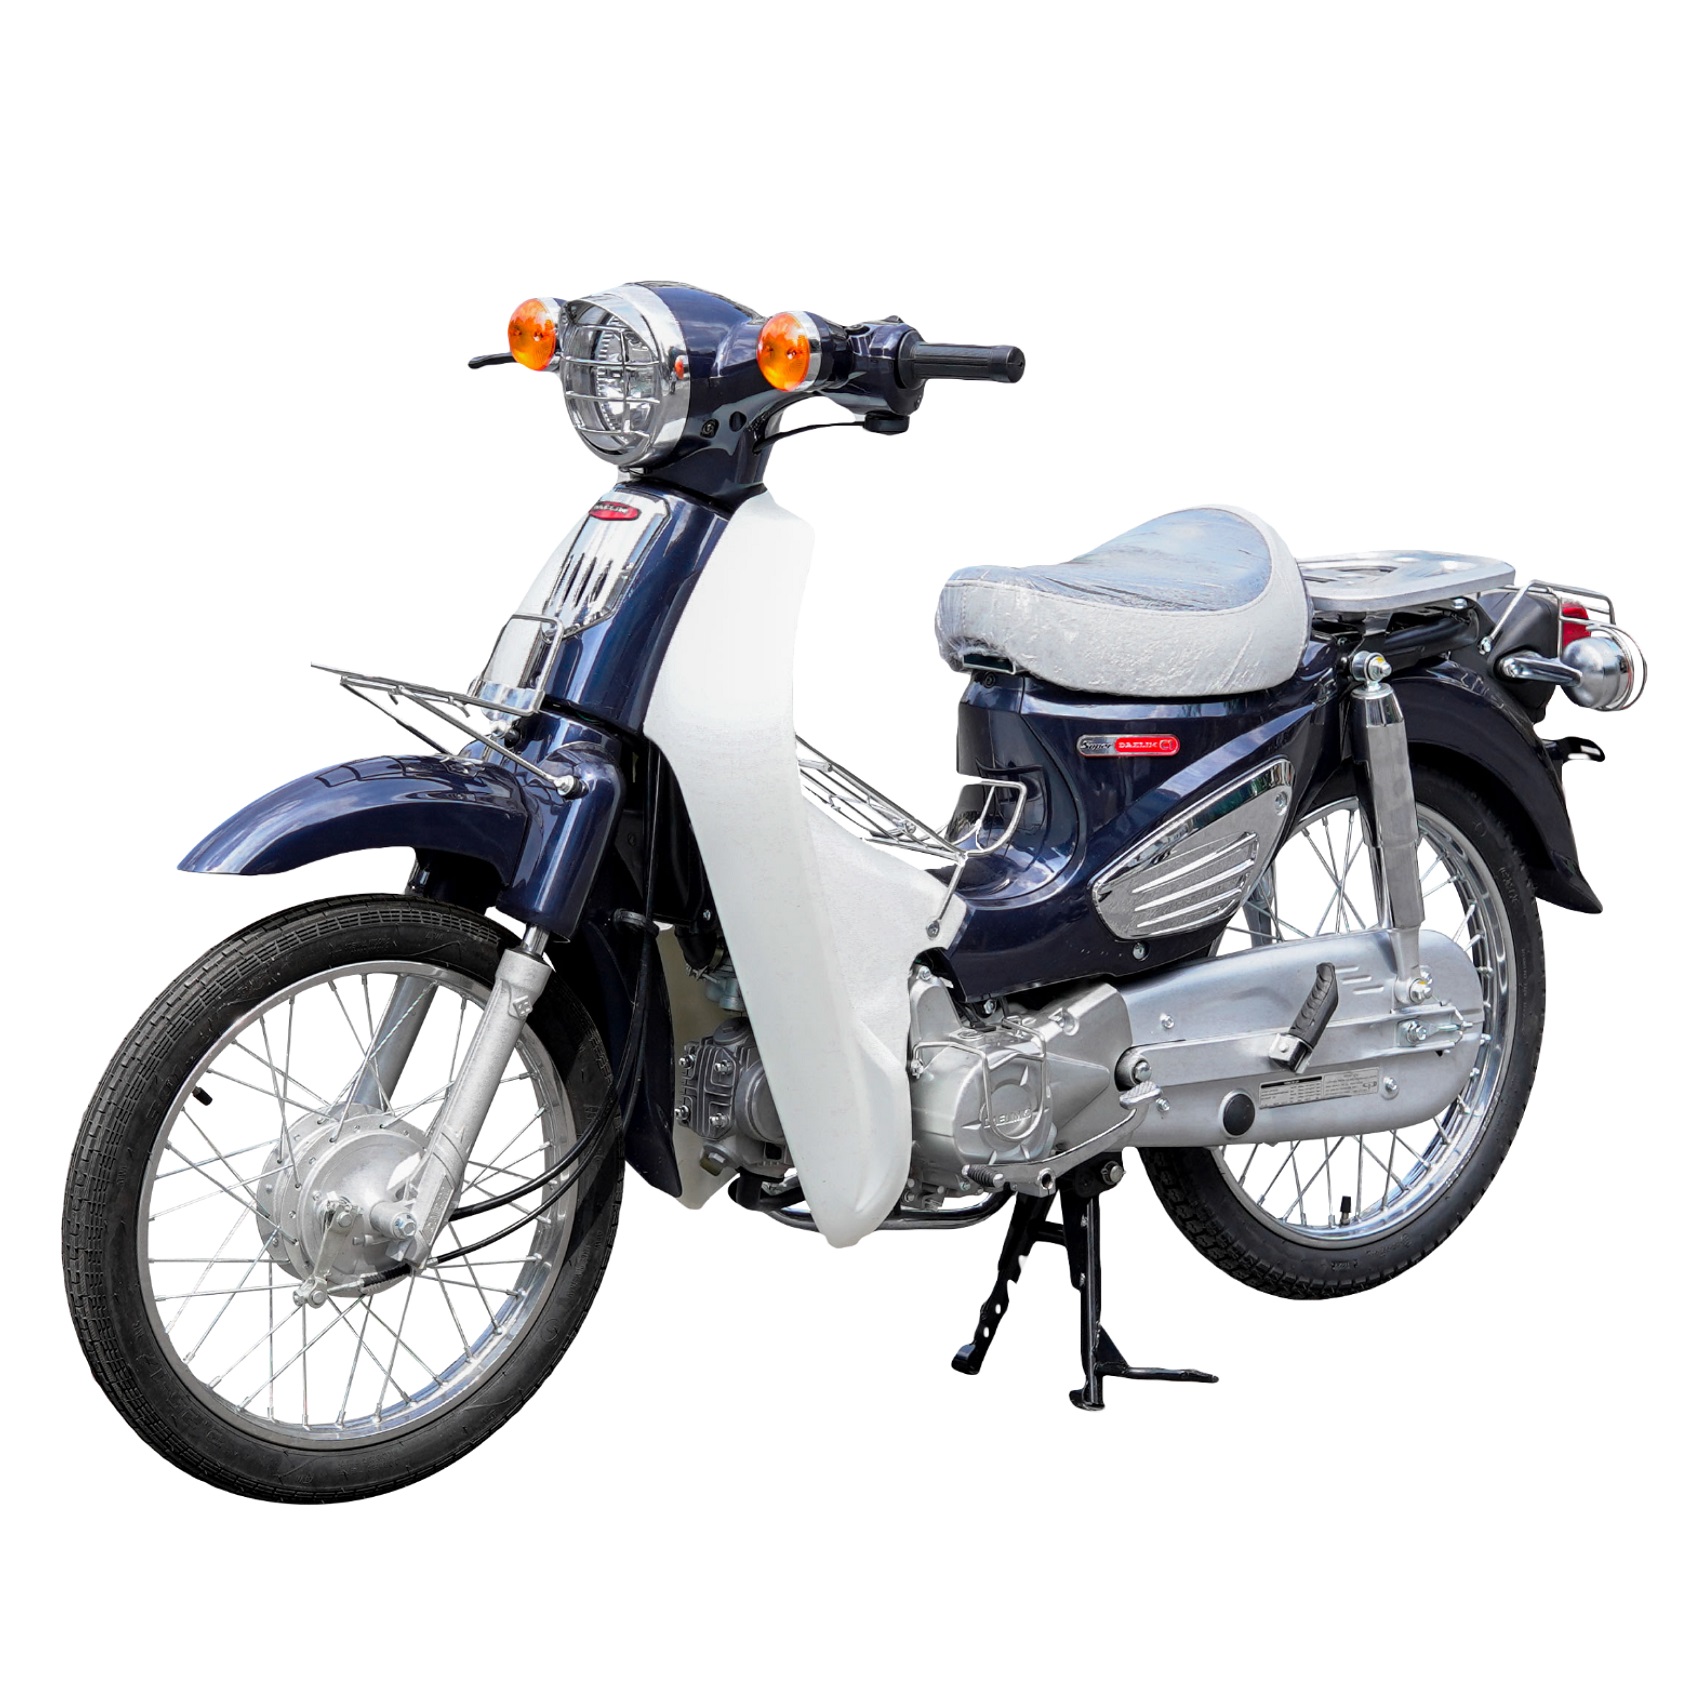 Trình làng Suzuki Lets 2022 mẫu xe 50cc tiện dụng trong đô thị nhưng giá  ngang Honda Vision